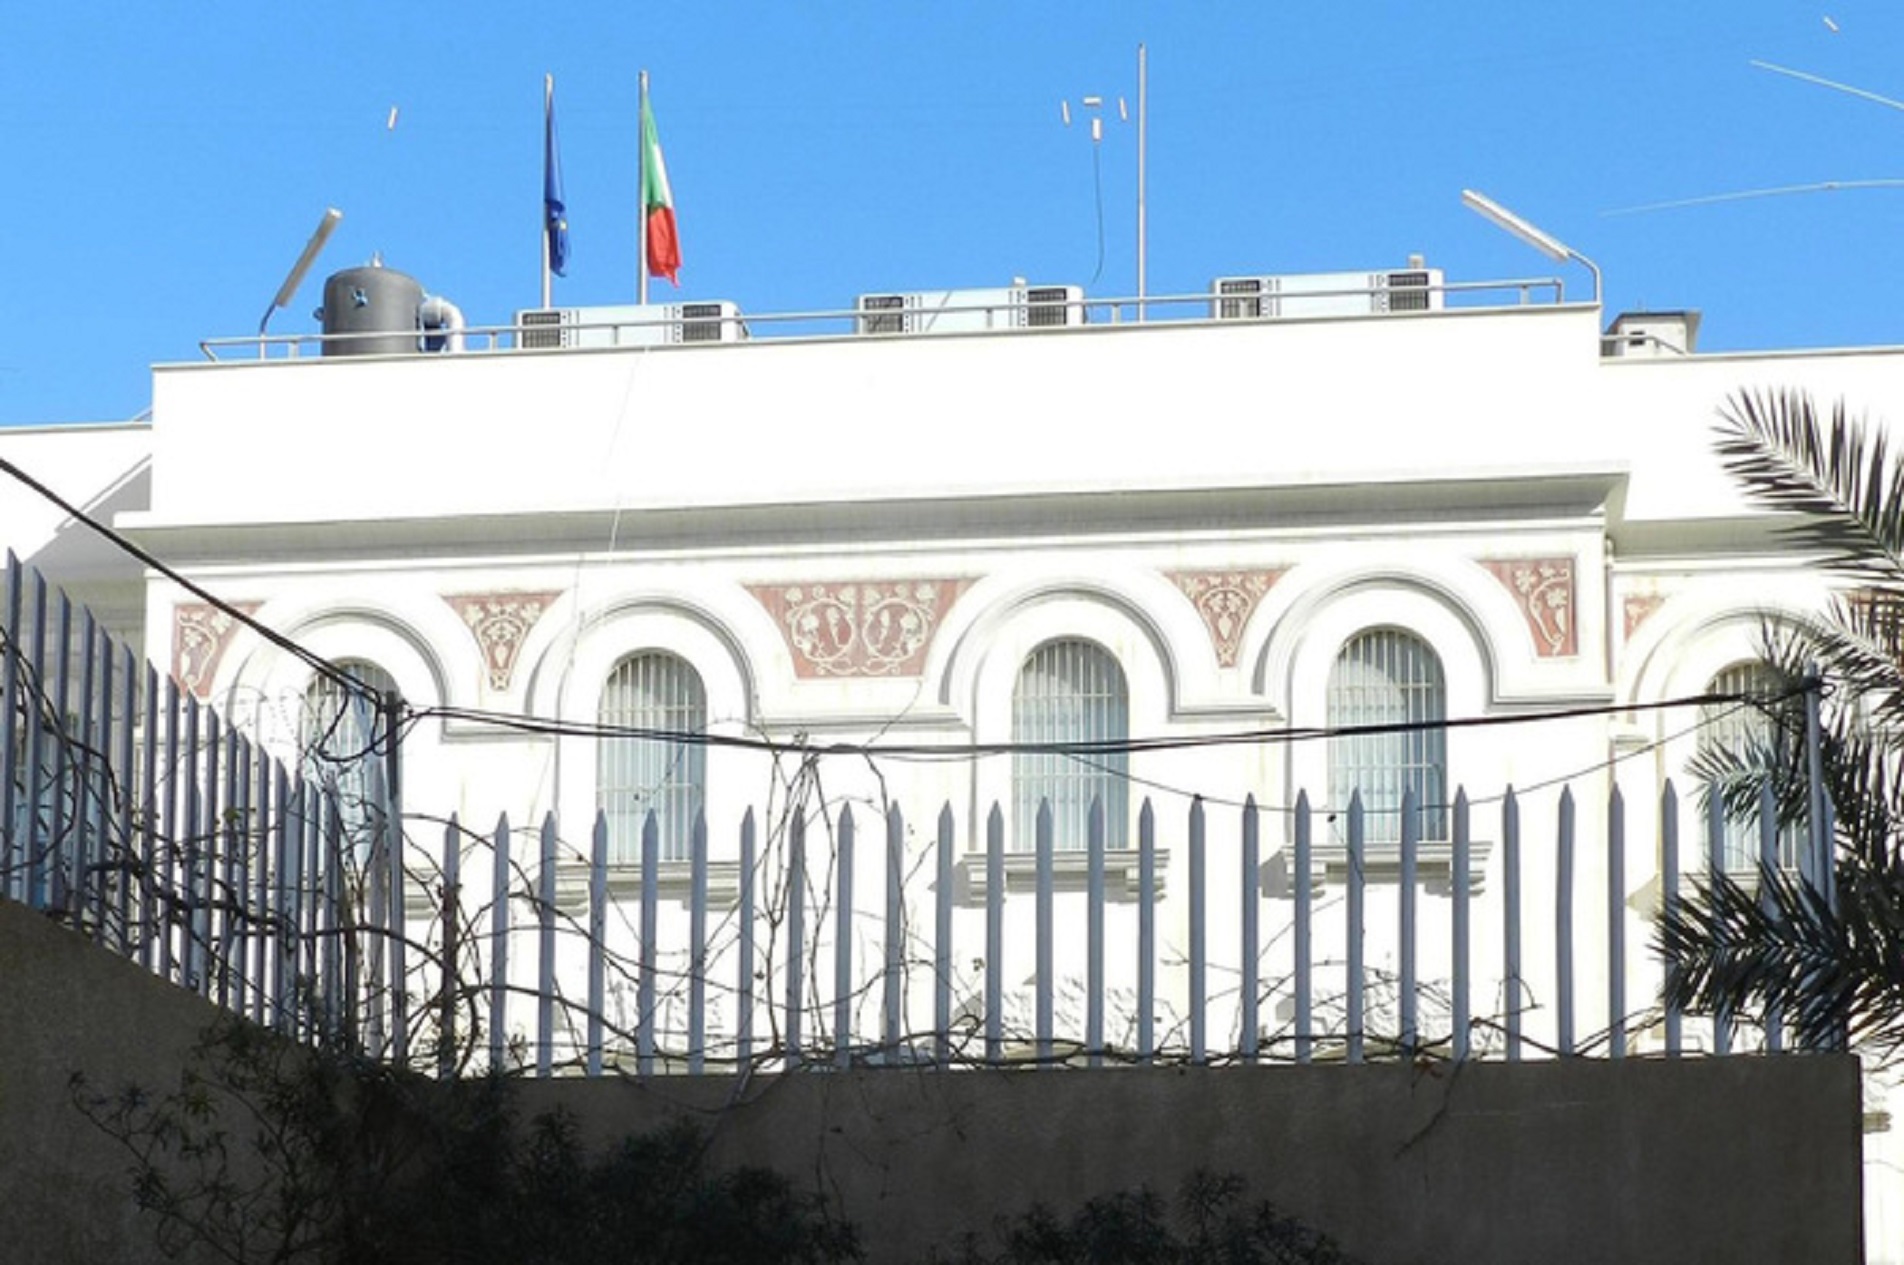 Una veduta esterna dell'ambasciata italiana a Tripoli ripresa il 18 marzo 2011.